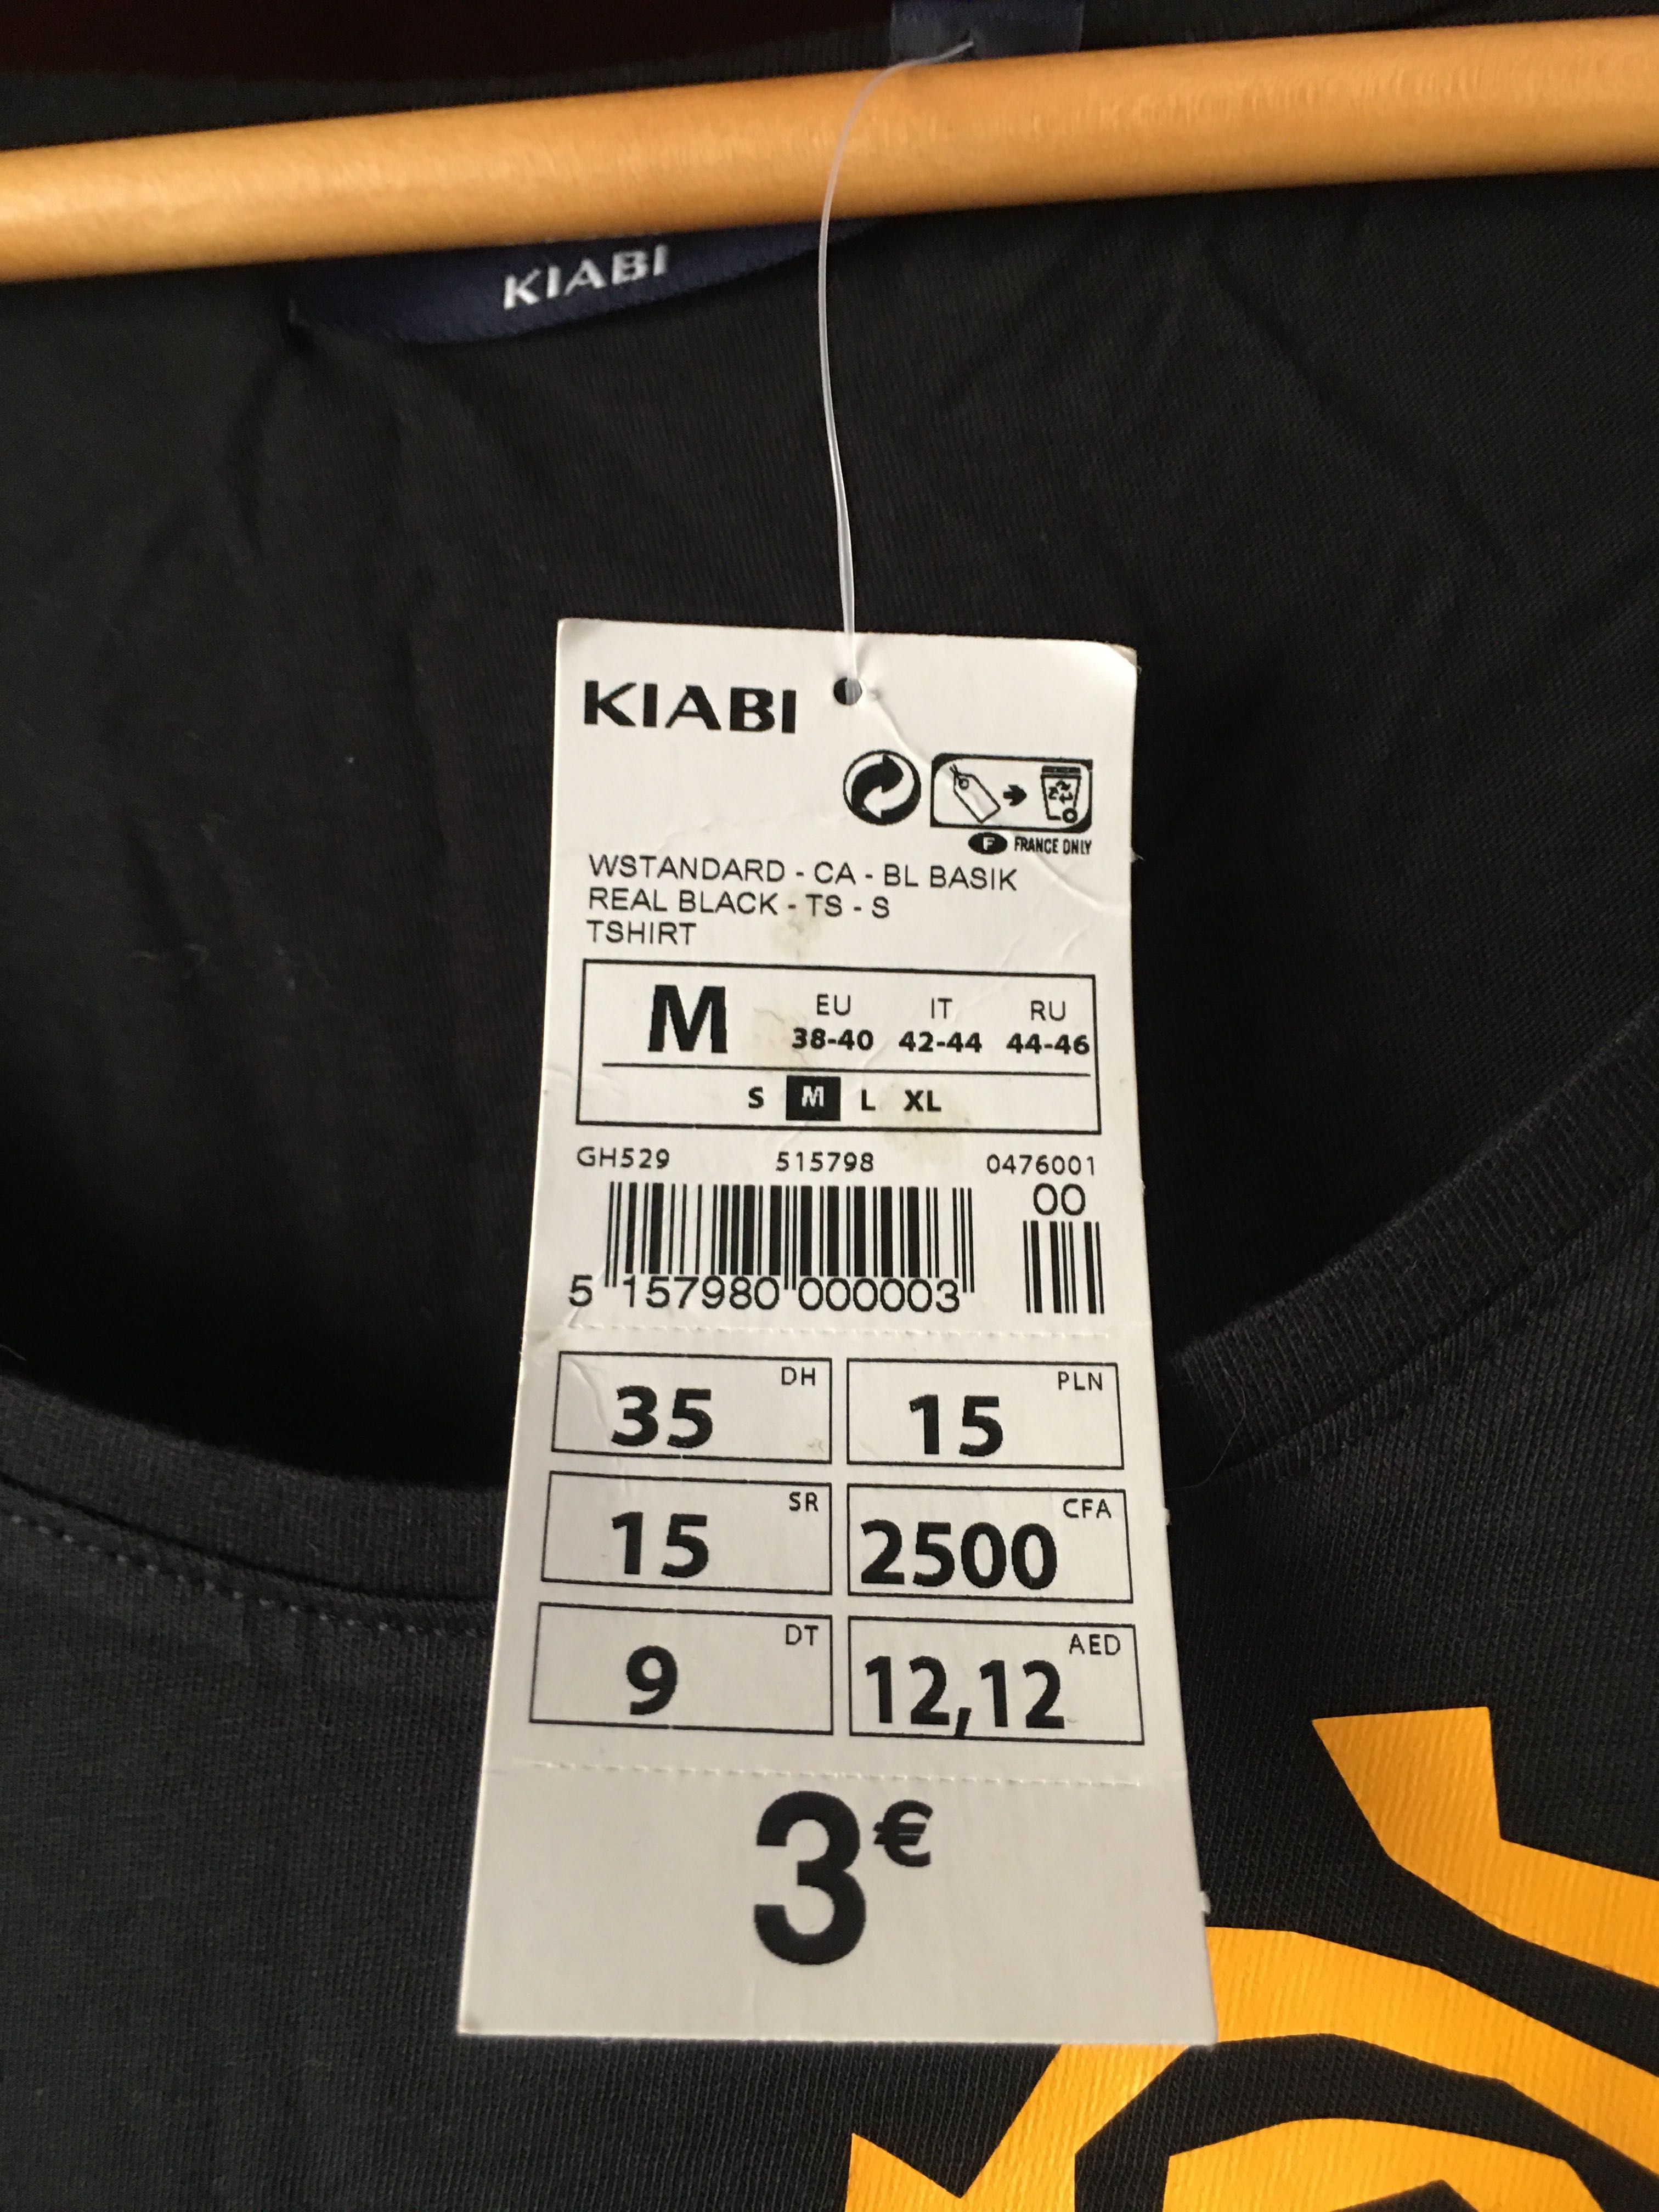 T-shirt preta - algodão - Kiabi/Inatel - M/38-40 - NOVA